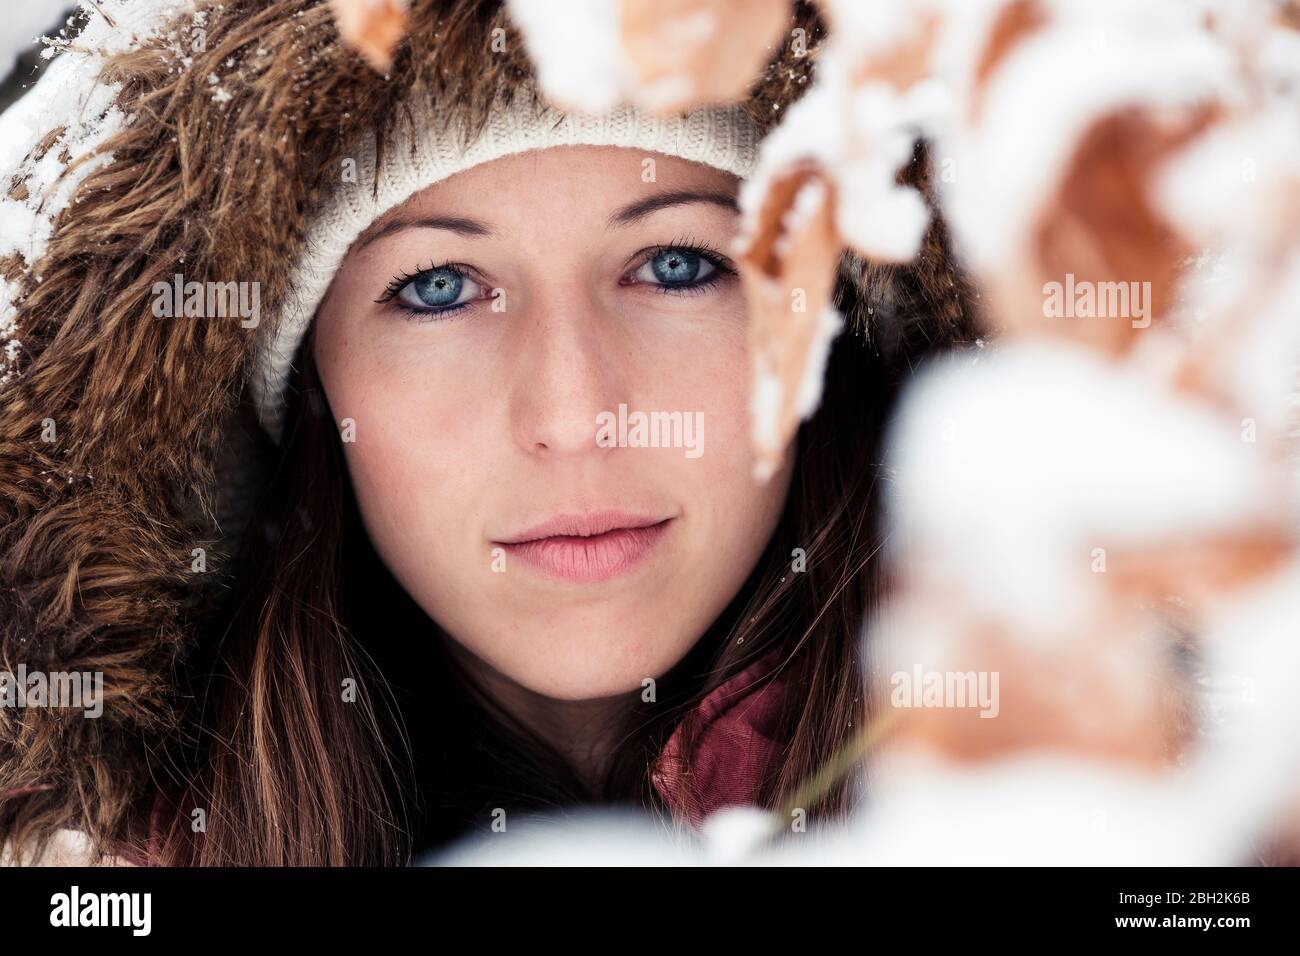 Ritratto di giovane donna con occhi blu in inverno Foto Stock